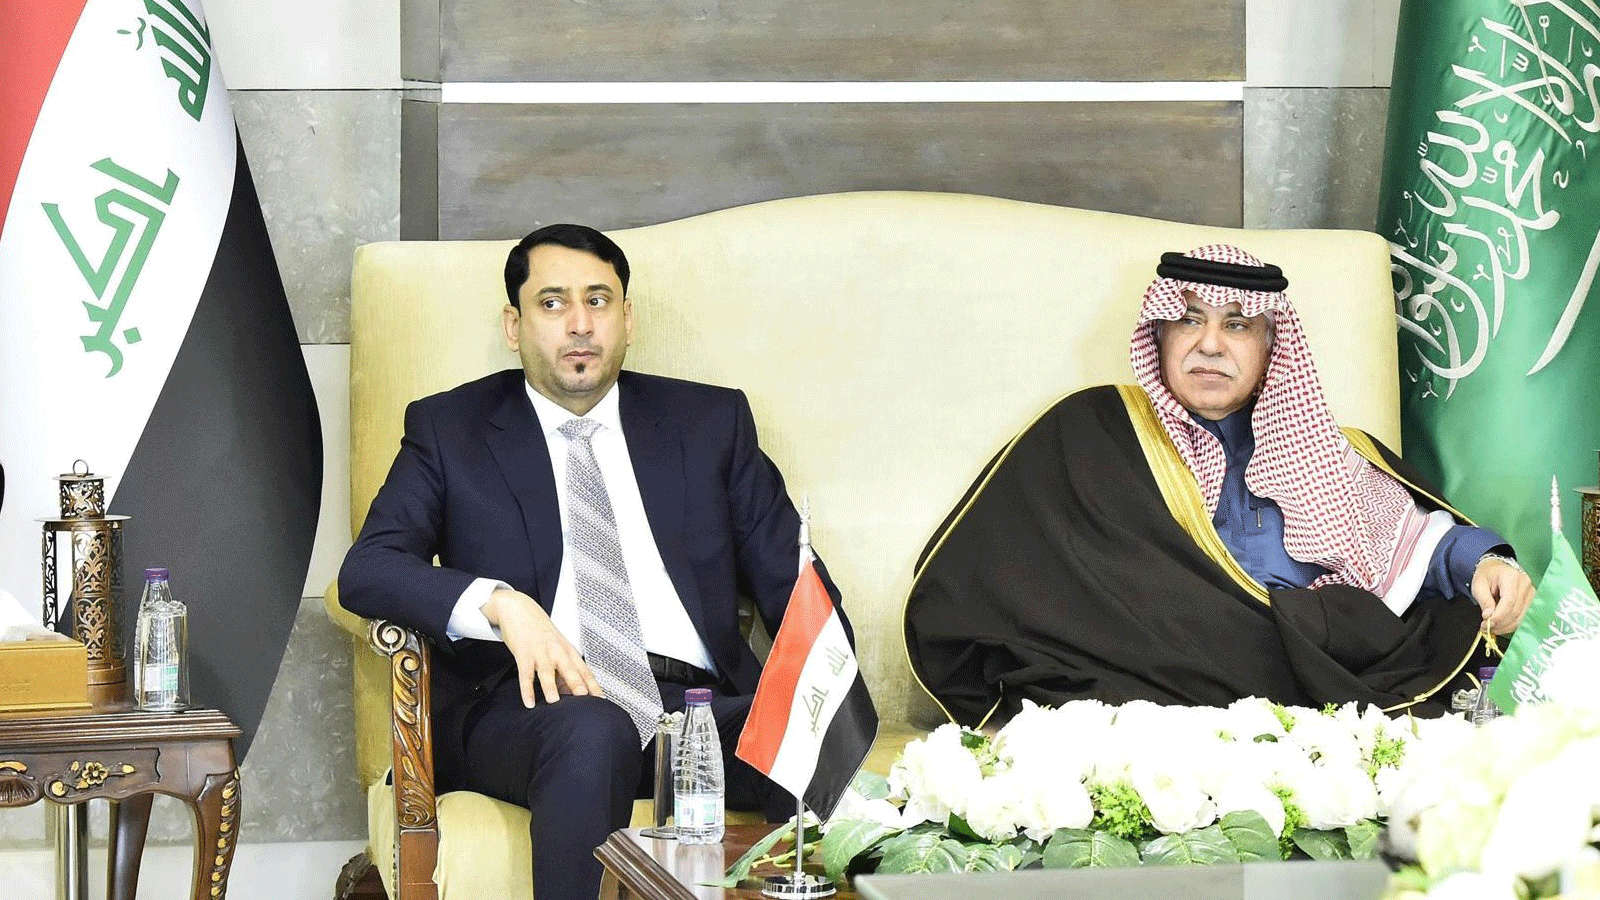 حميد الغزي امين مجلس الوزراء العراقي مع وزير التجارة السعودي ماجد القصبي خلال مؤتمر رجال الاعمال في بلديهما المنعقد حاليا في الرياض (الجزيرة السعودية)